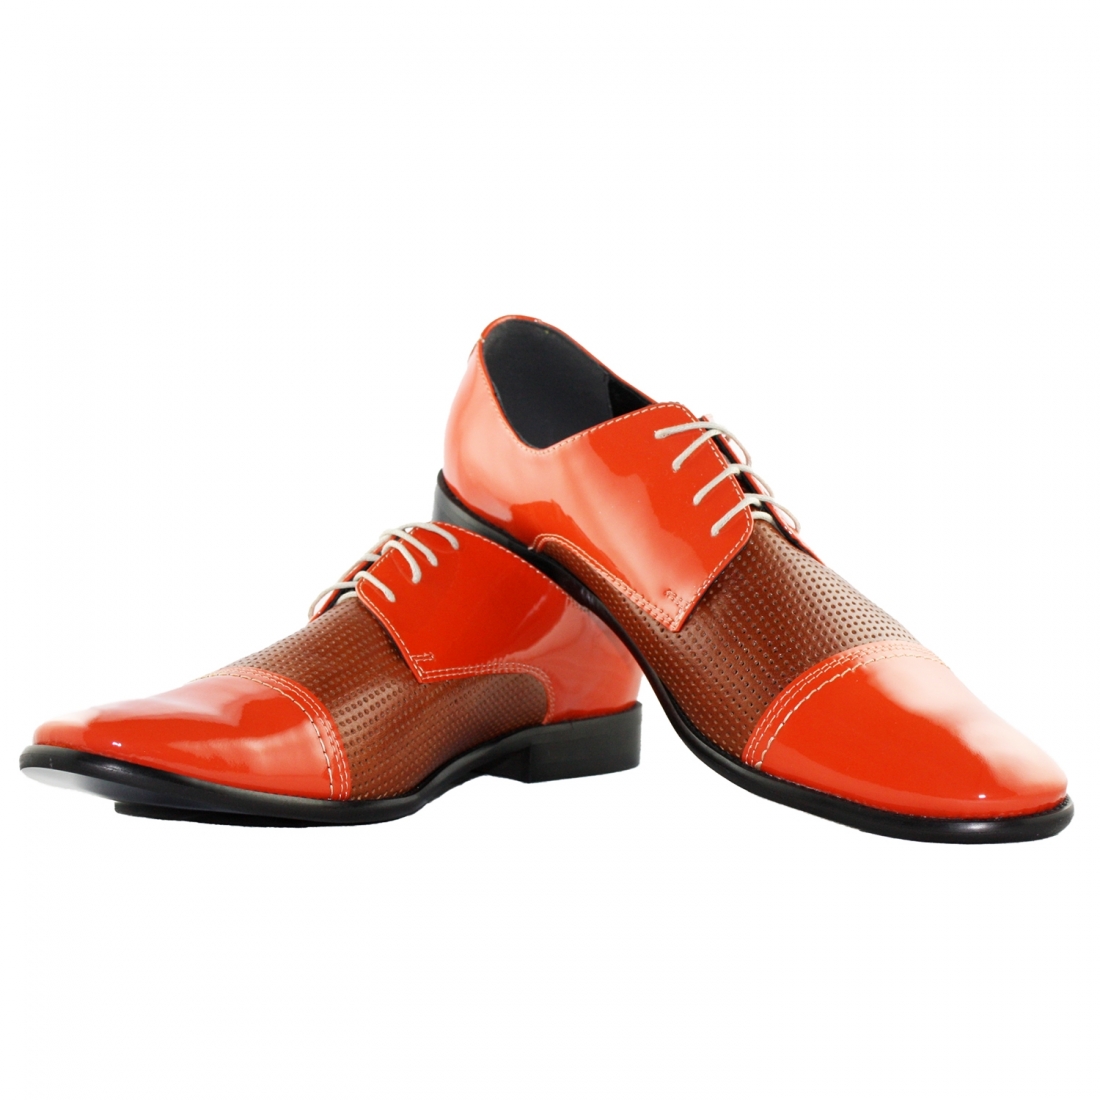 Modello Soterone - Scarpe Classiche - Handmade Colorful Italian Leather Shoes